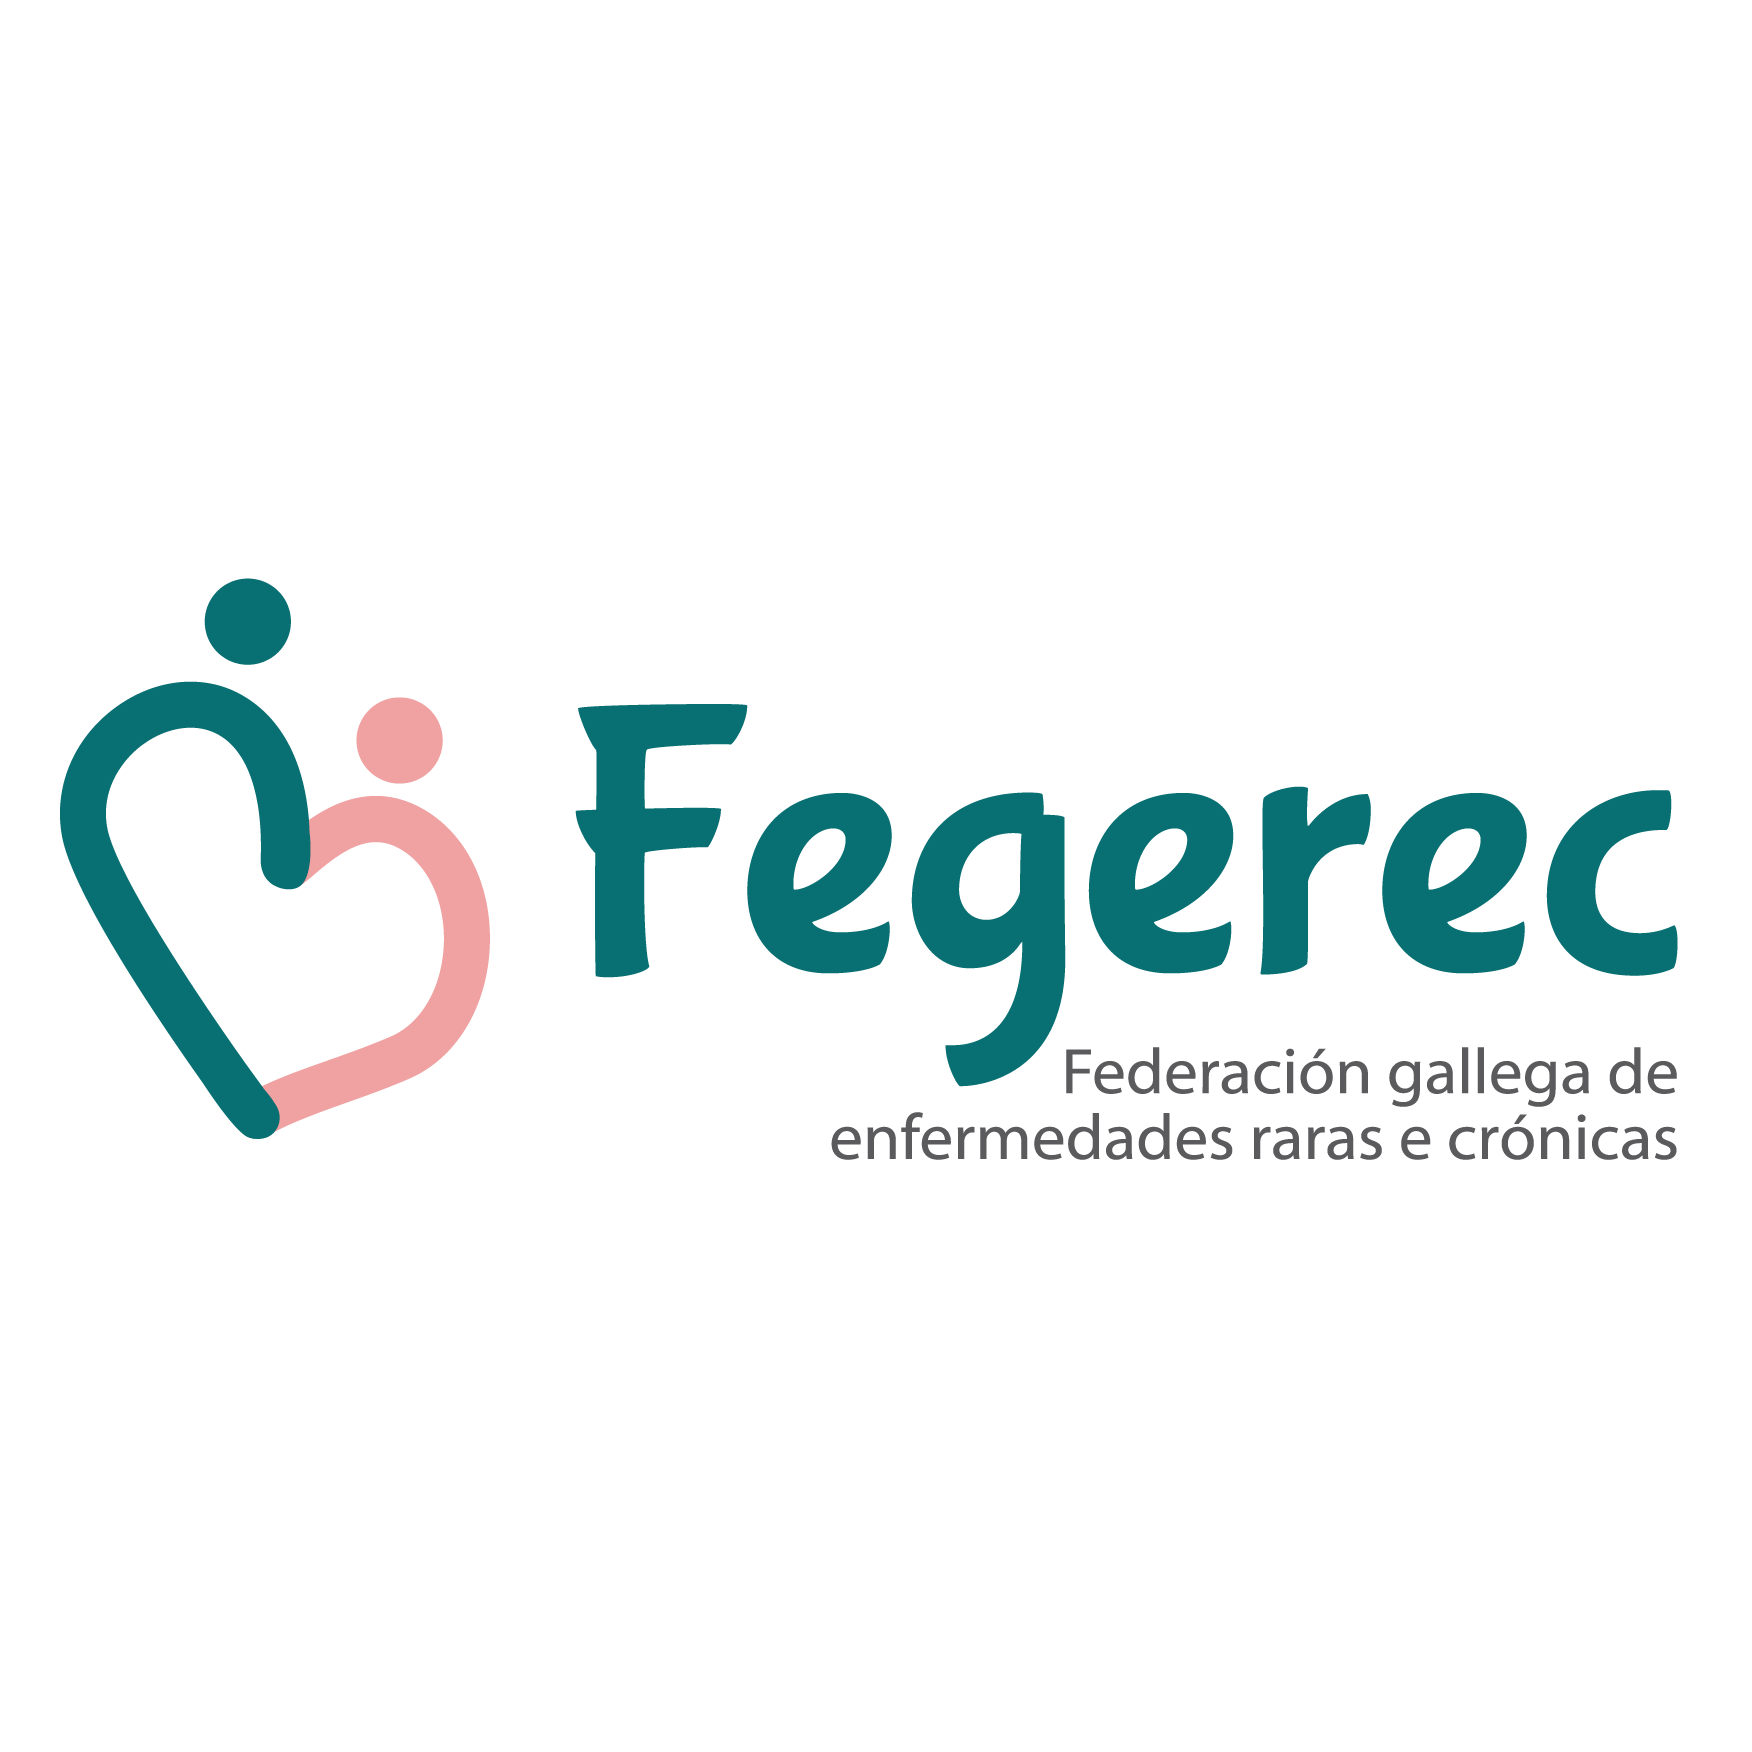 Federación Gallega de Enfermedades Raras e Crónicas- Fegerec Profile, news, ratings and communication